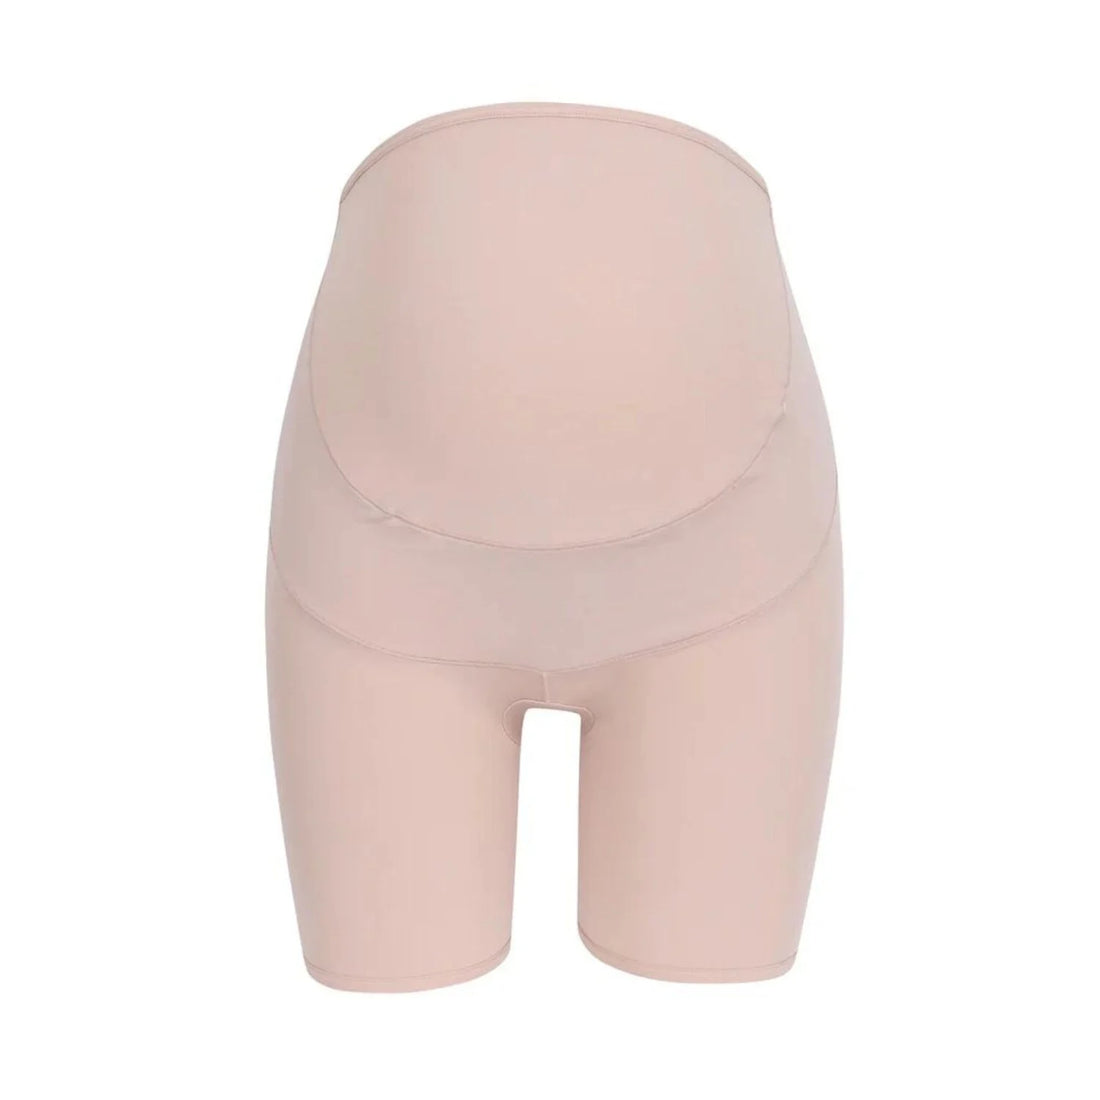 Wacoal Maternity Panty กางเกงในรูปแบบเต็มตัว รุ่น WM6180 สีเบจ (BE)